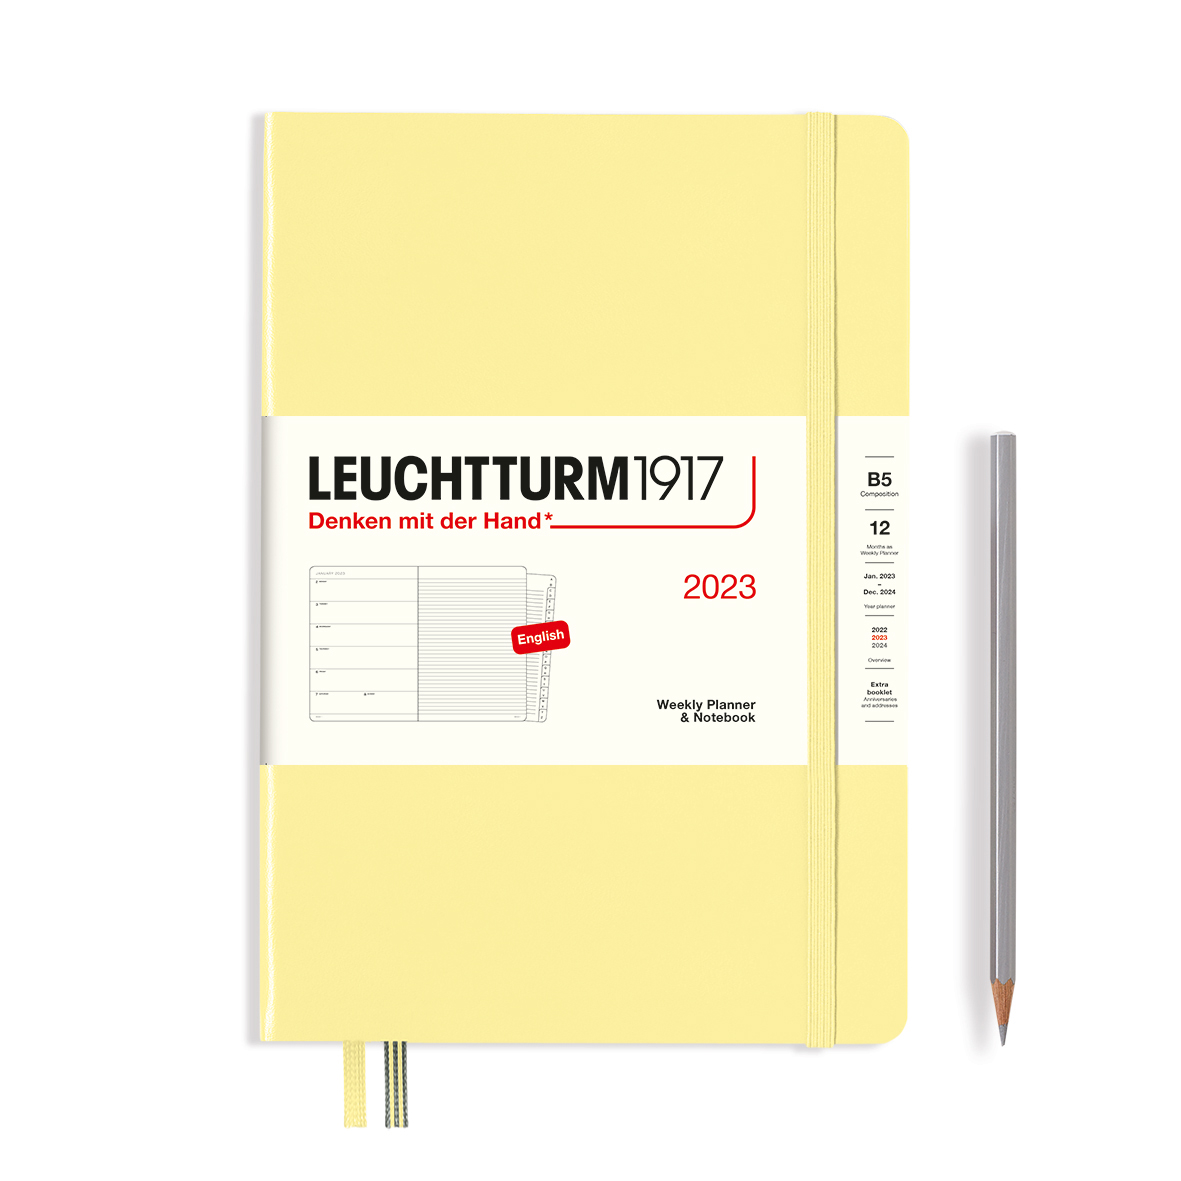 Еженедельник-блокнот датированный Leuchtturm1917 Composition B5 на 2023г, дни без расписания, 72л, т еженедельник датир leuchtturm1917 composition b5 на 2023г 72л тв обл